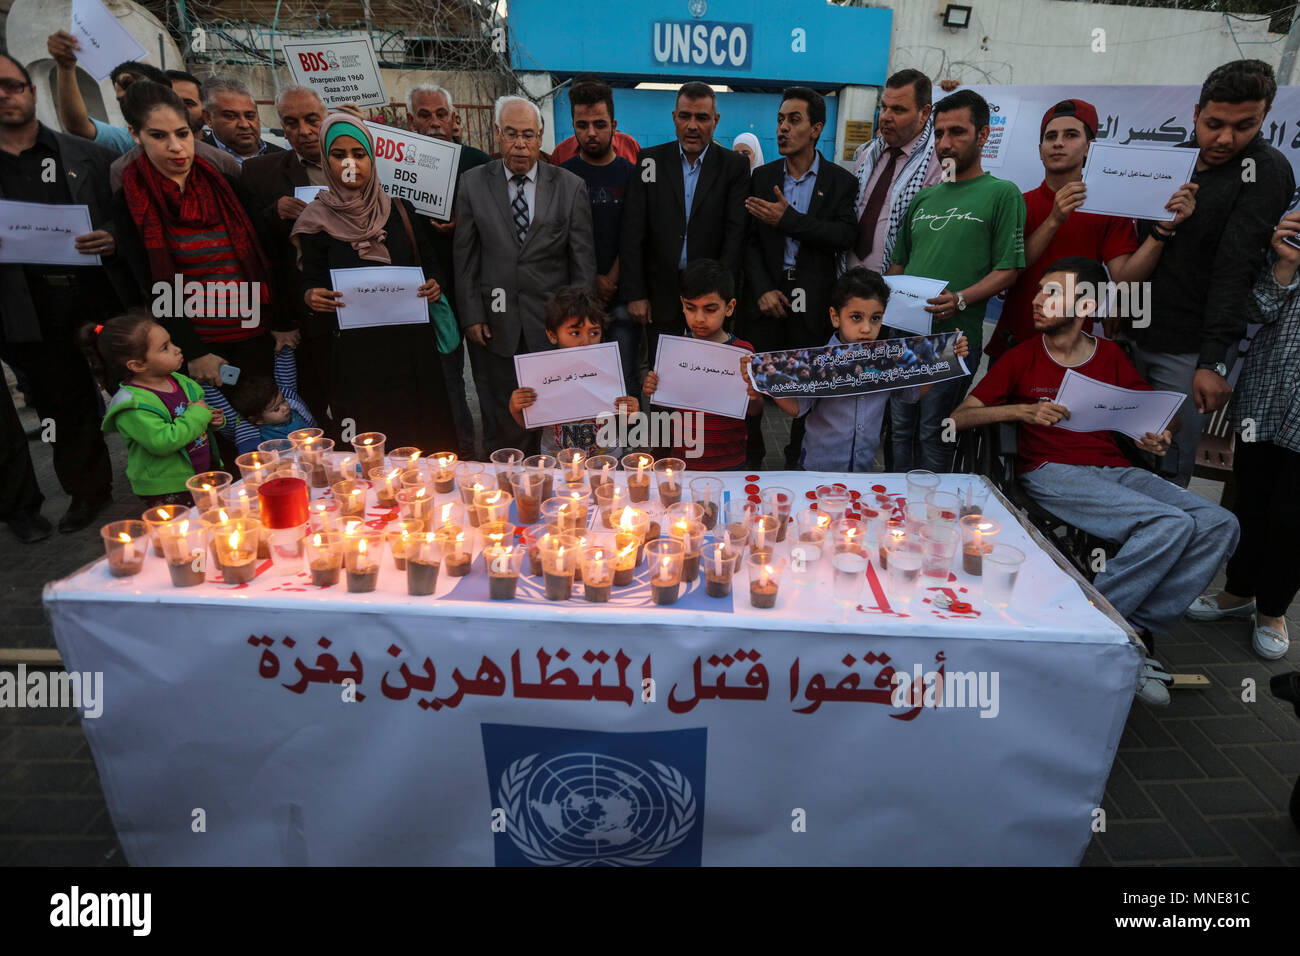 Palästinensische Demonstranten halten eine Mahnwache für die Opfer der Israel-Gaza Zusammenstößen an der Grenze, an der Pforte des UN-Sonderkoordinators für den Nahost-friedensprozess (UNSCO) in Gaza, Gazastreifen, 16. Mai 2018. Mehr als 60 Palästinenser getötet und etwa 2.400 während der massenproteste entlang der Grenze auf der 70. Jahrestag der Nakba Tag (Tag der Katastrophe), die die Vertreibung vor und der Israelischen Unabhängigkeitserklärung 1948 folgte Marken verletzt wurden. Foto: Wissam Nassar/dpa Stockfoto